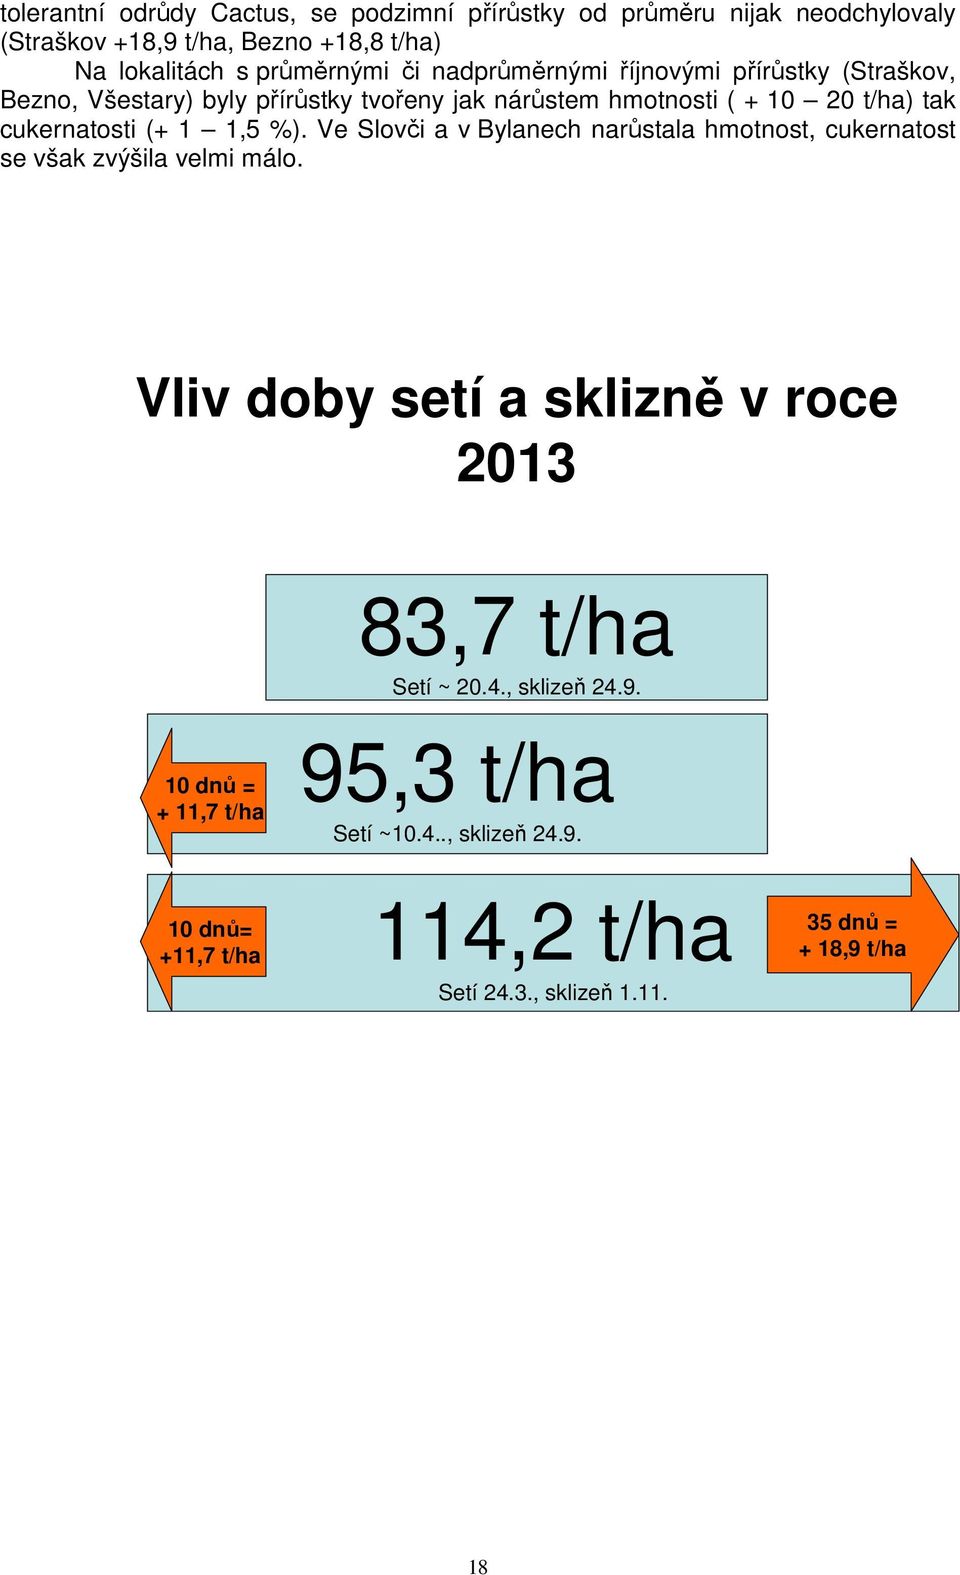 %). Ve Slovči a v Bylanech narůstala hmotnost, cukernatost se však zvýšila velmi málo.